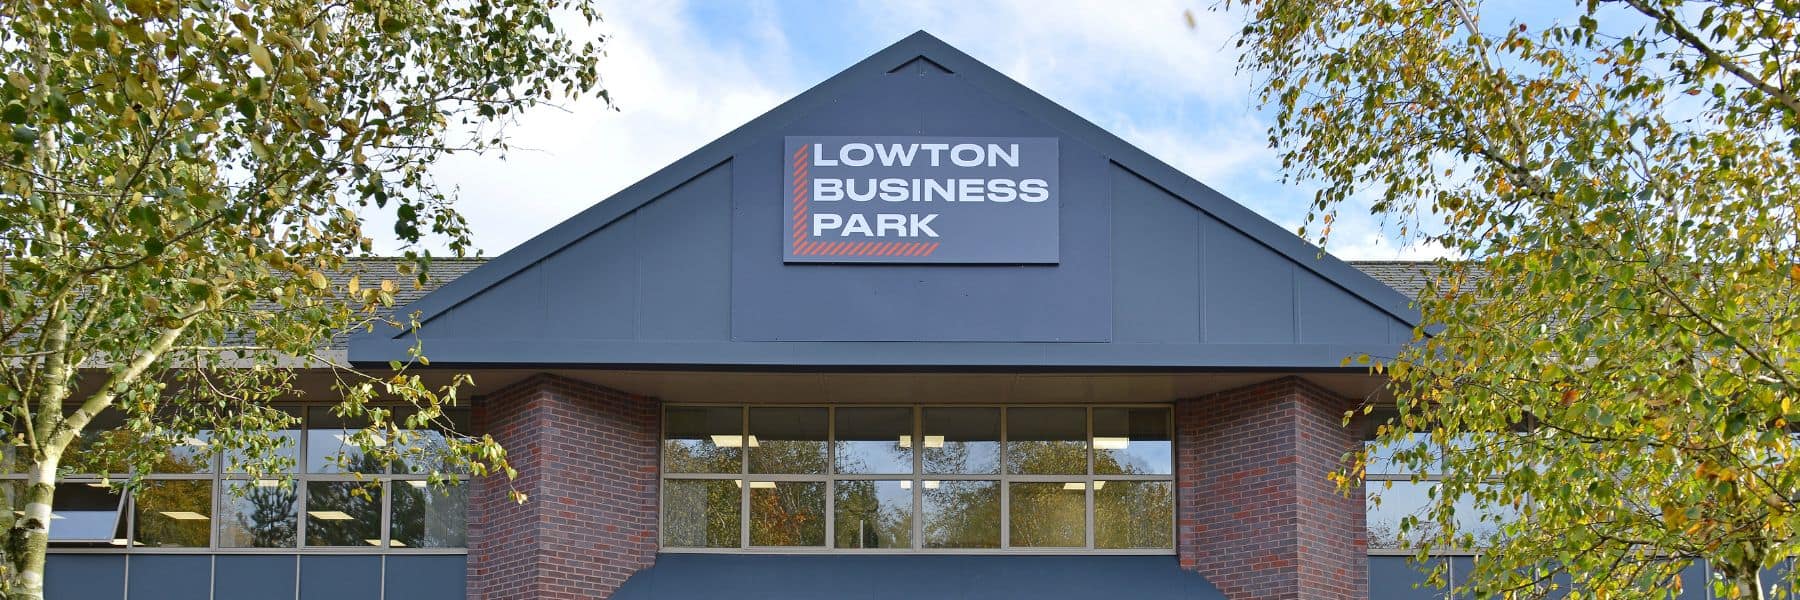 Lowton Business Park